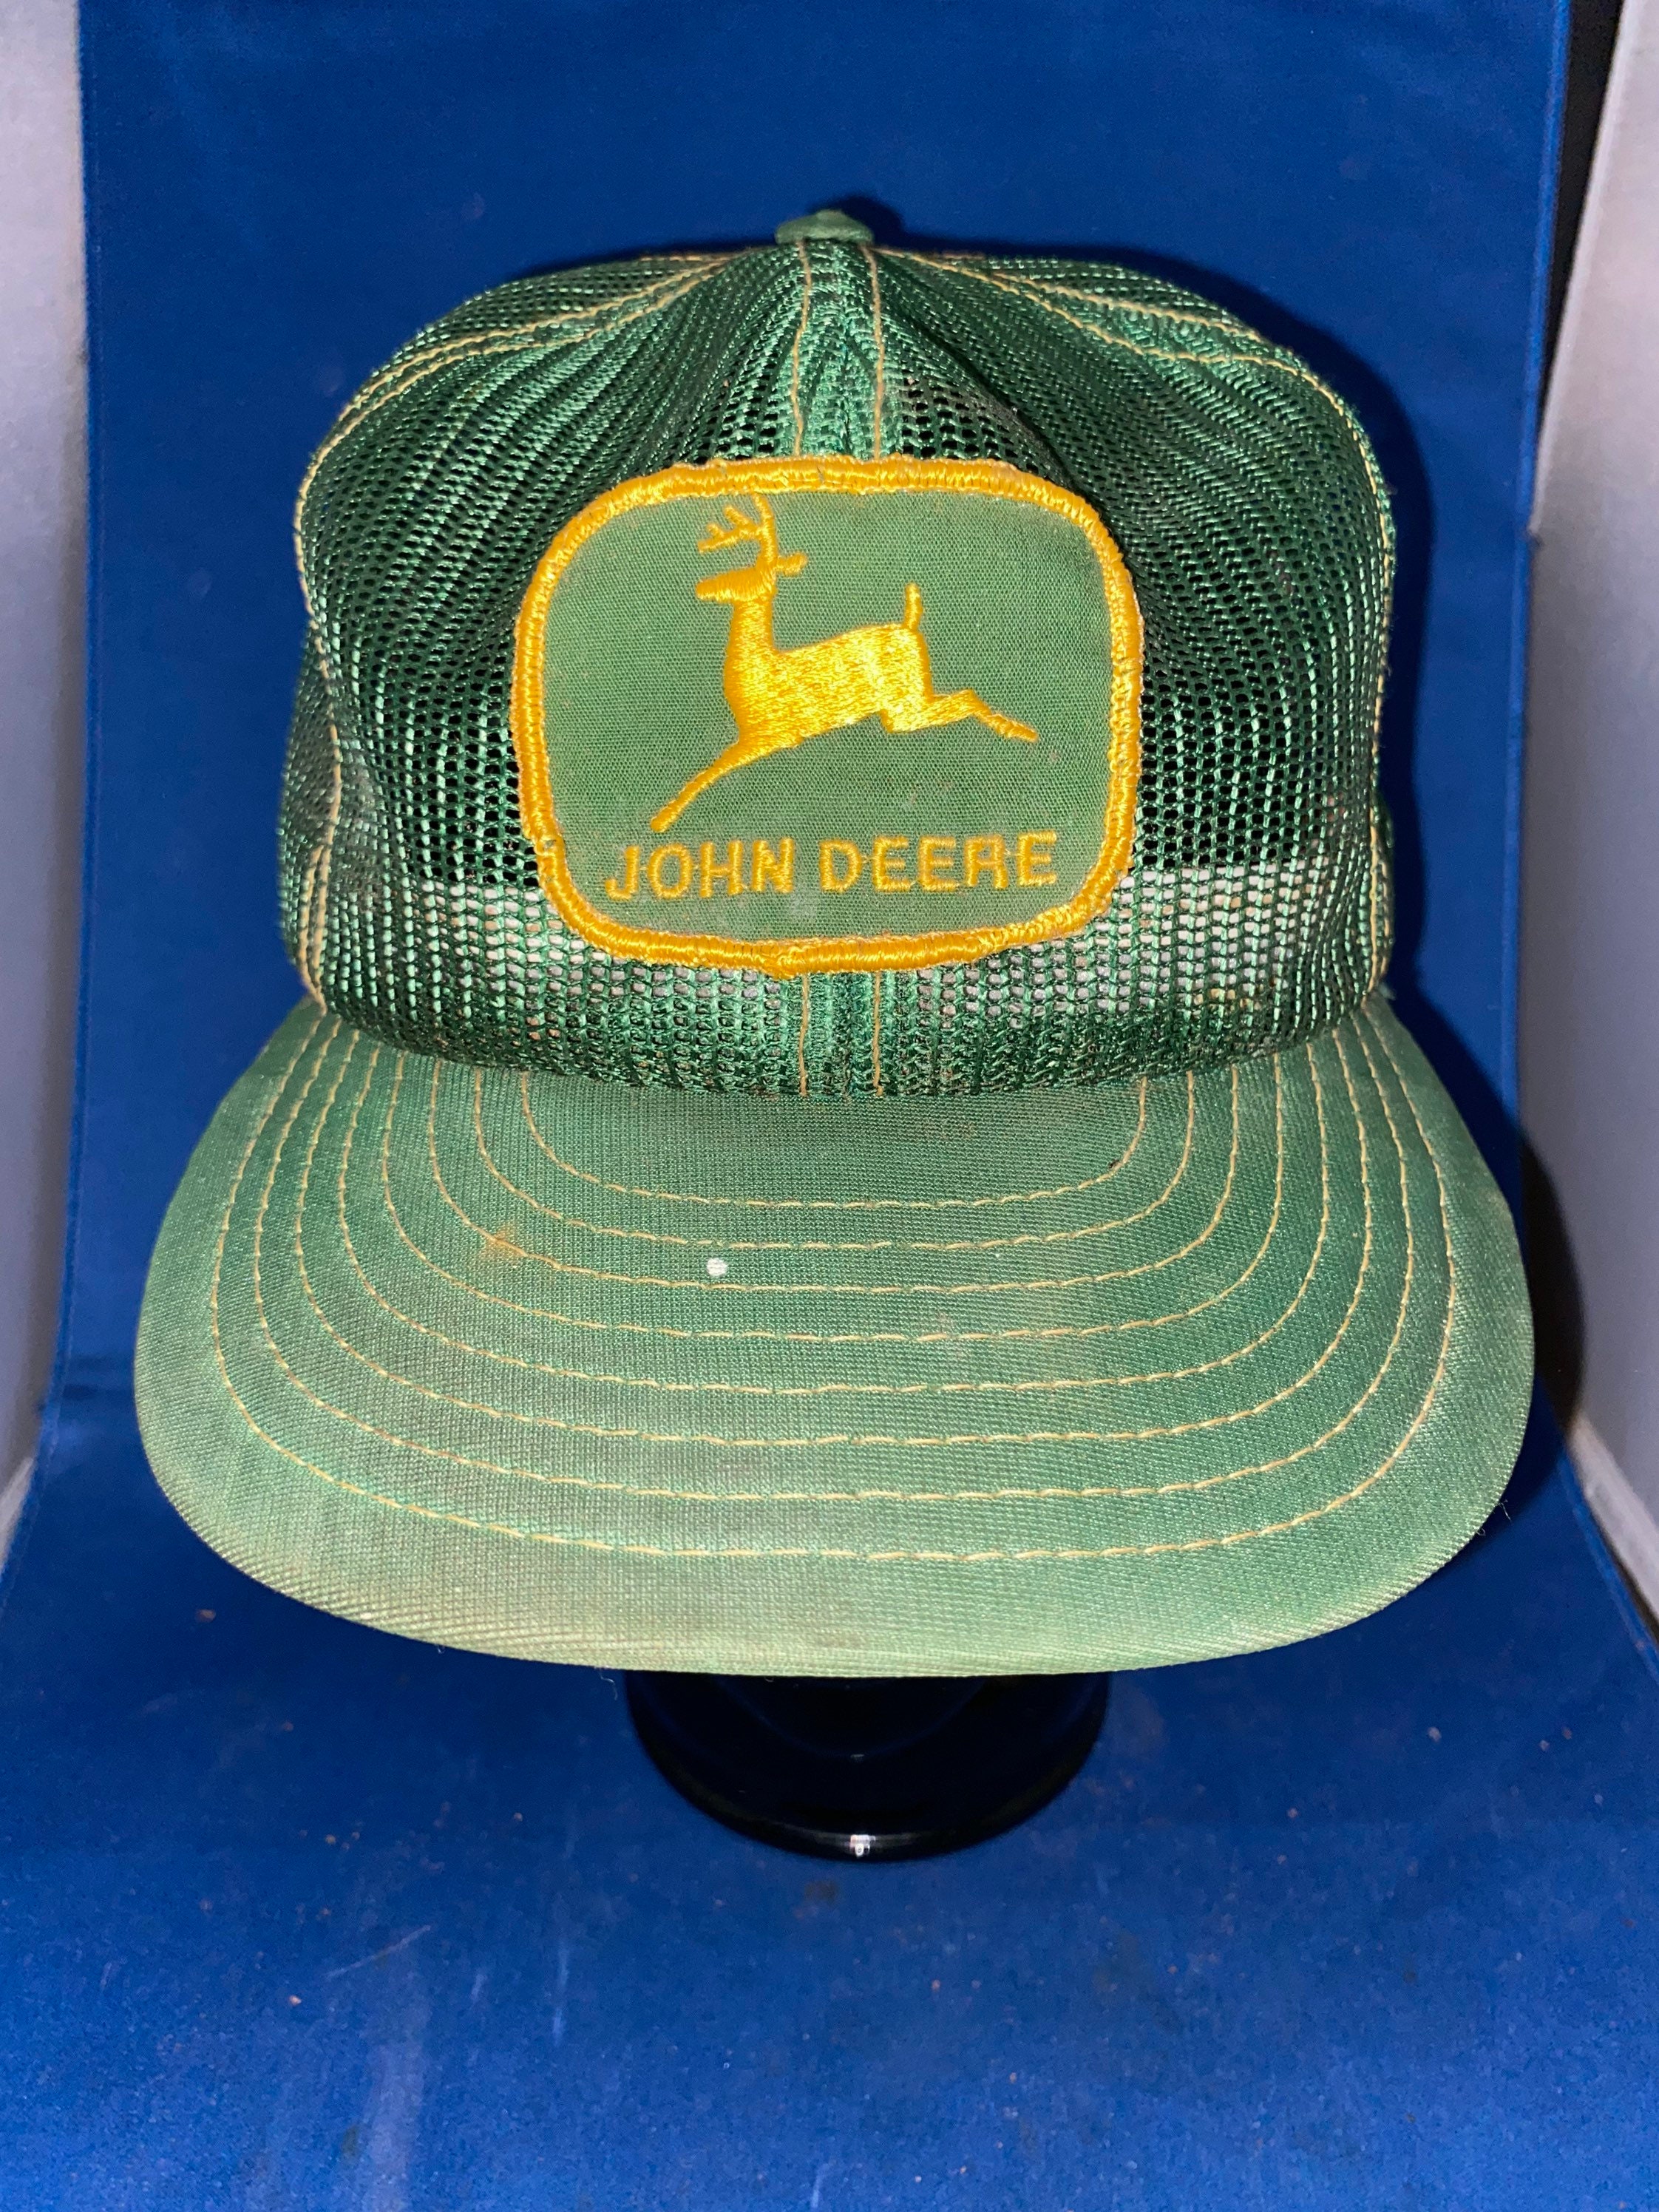 John Deere Trucker Hat Vintage Louisville Denim Adjustable